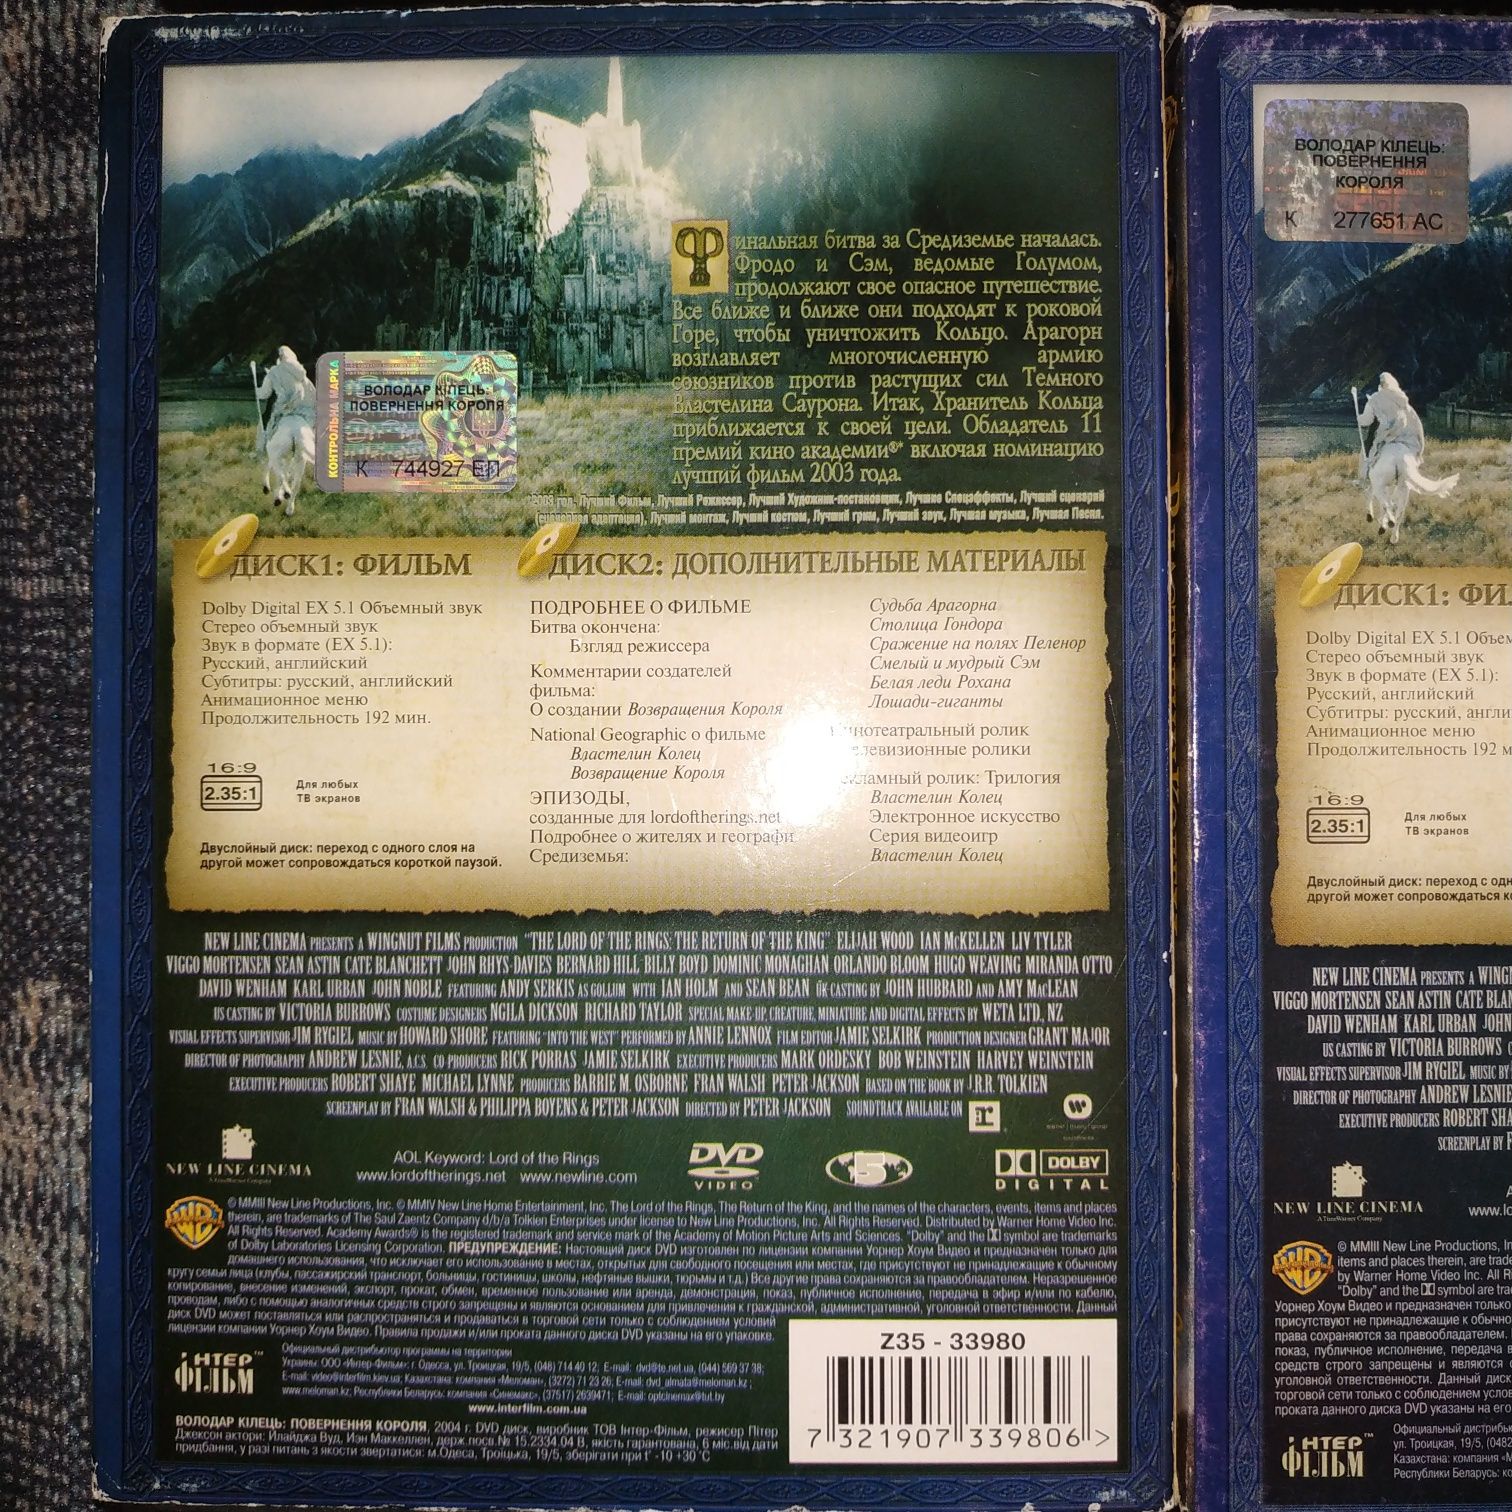 ДВД диски лицензия Властелин колец, Возвращение короля, Две крепости